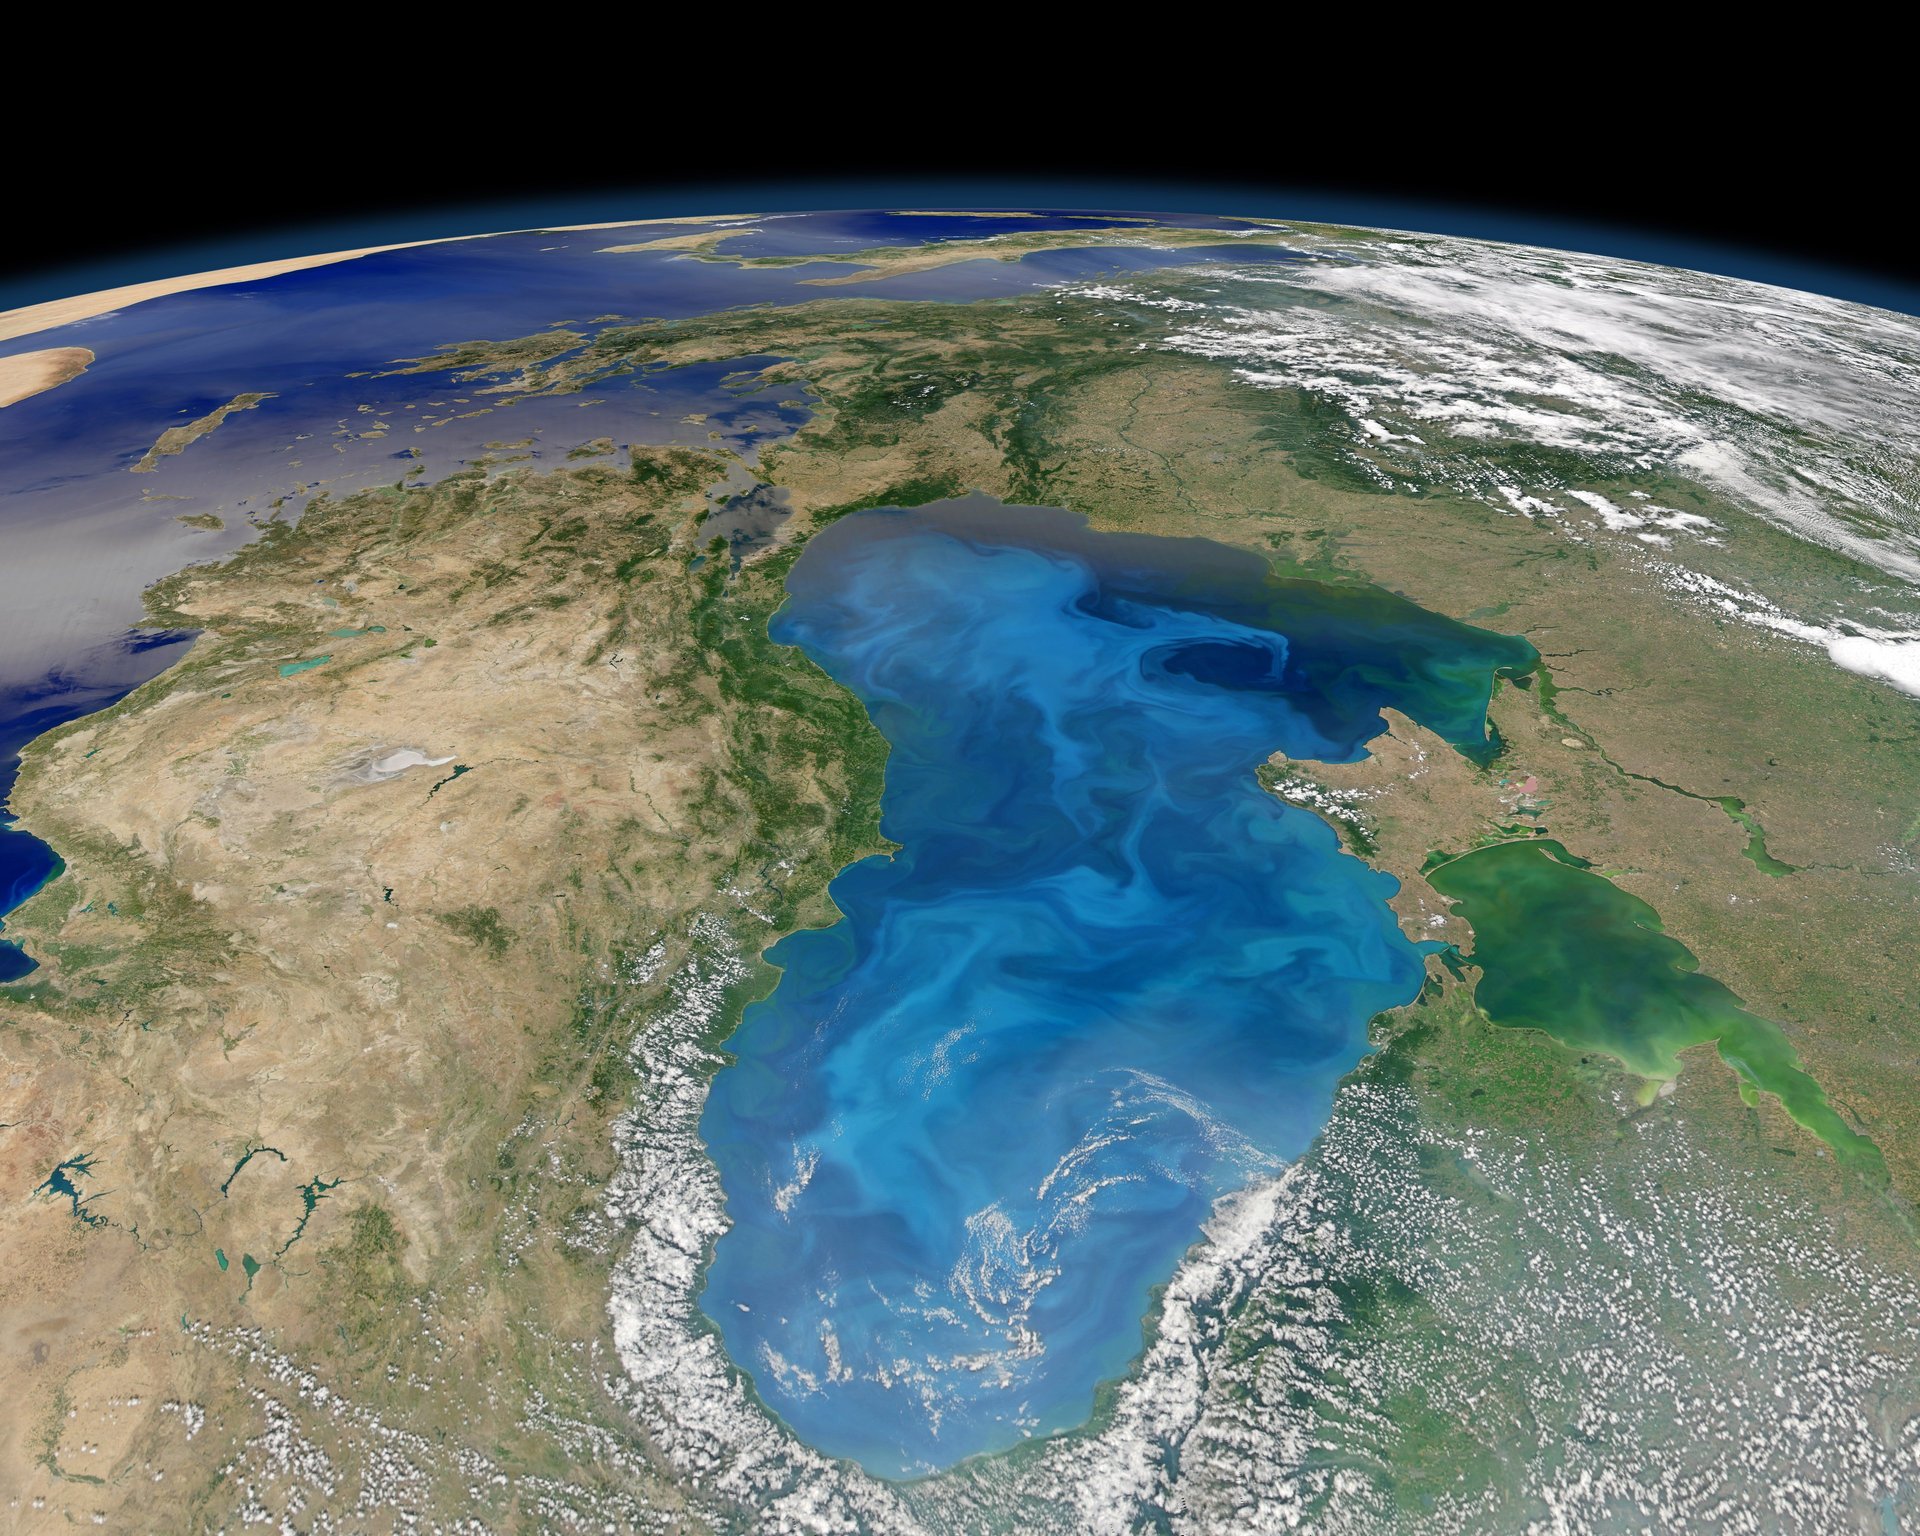 Фото из космоса чёрного моря